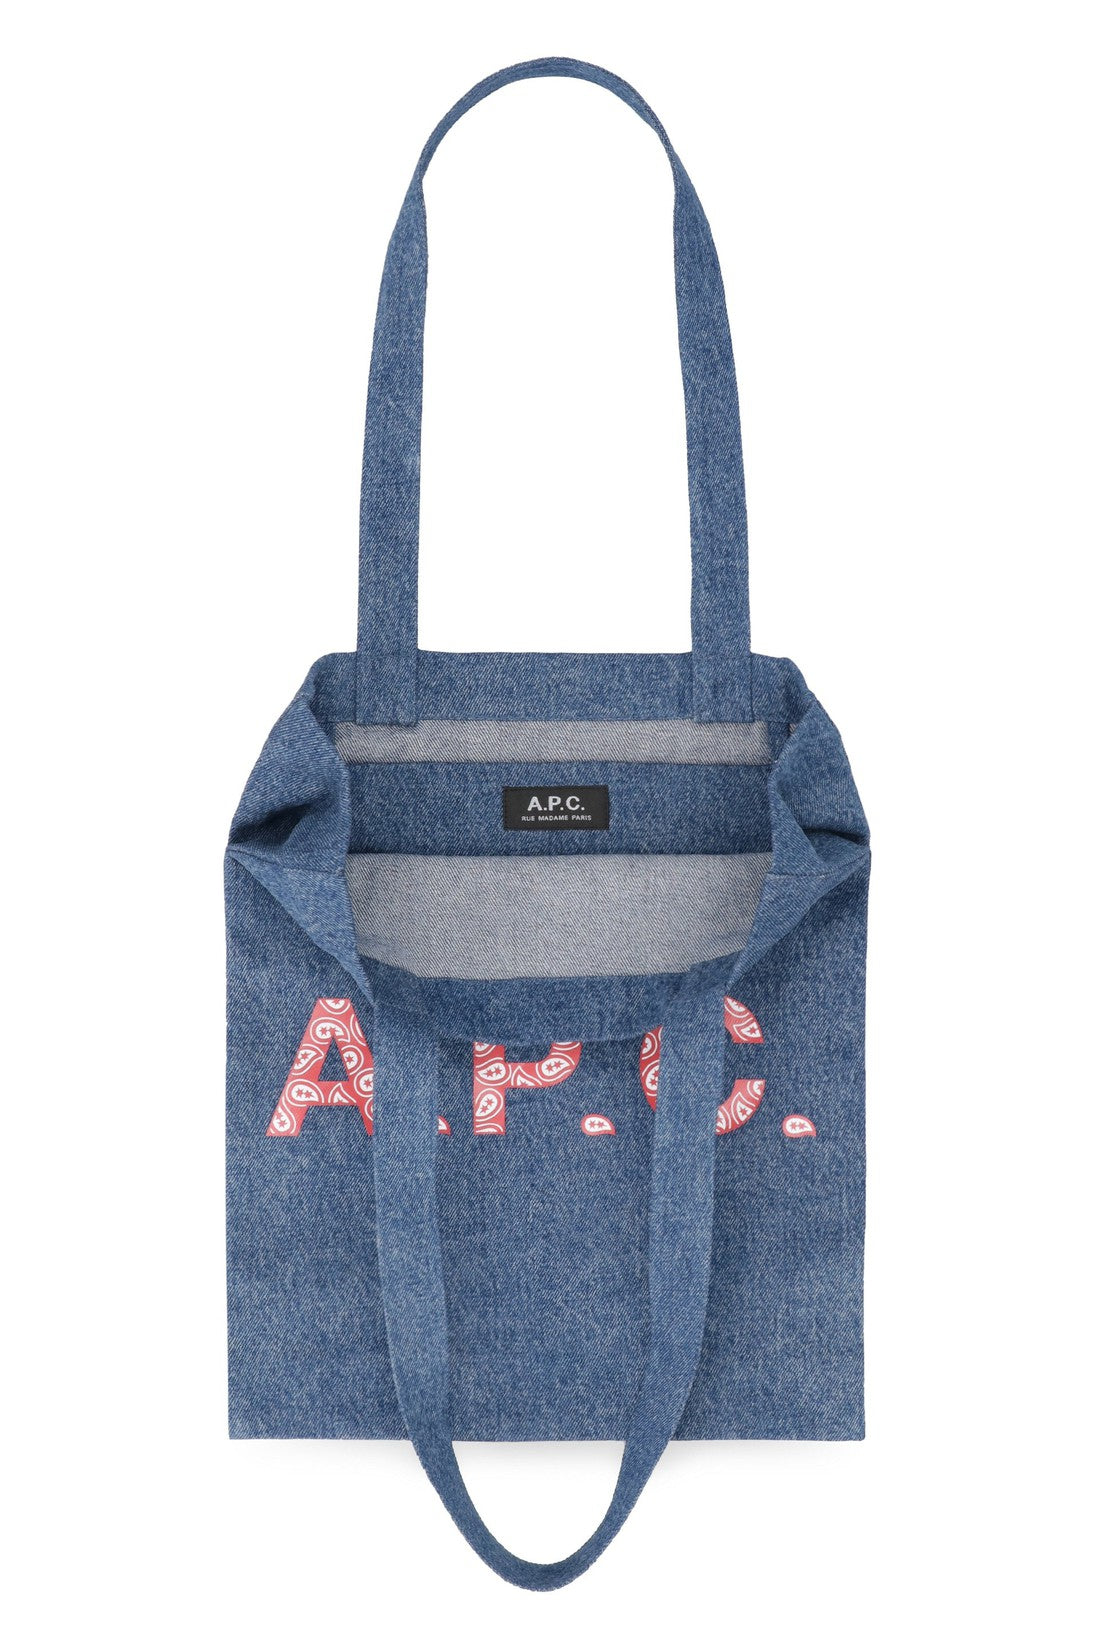 A.P.C.-OUTLET-SALE-Lou canvas tote bag-ARCHIVIST